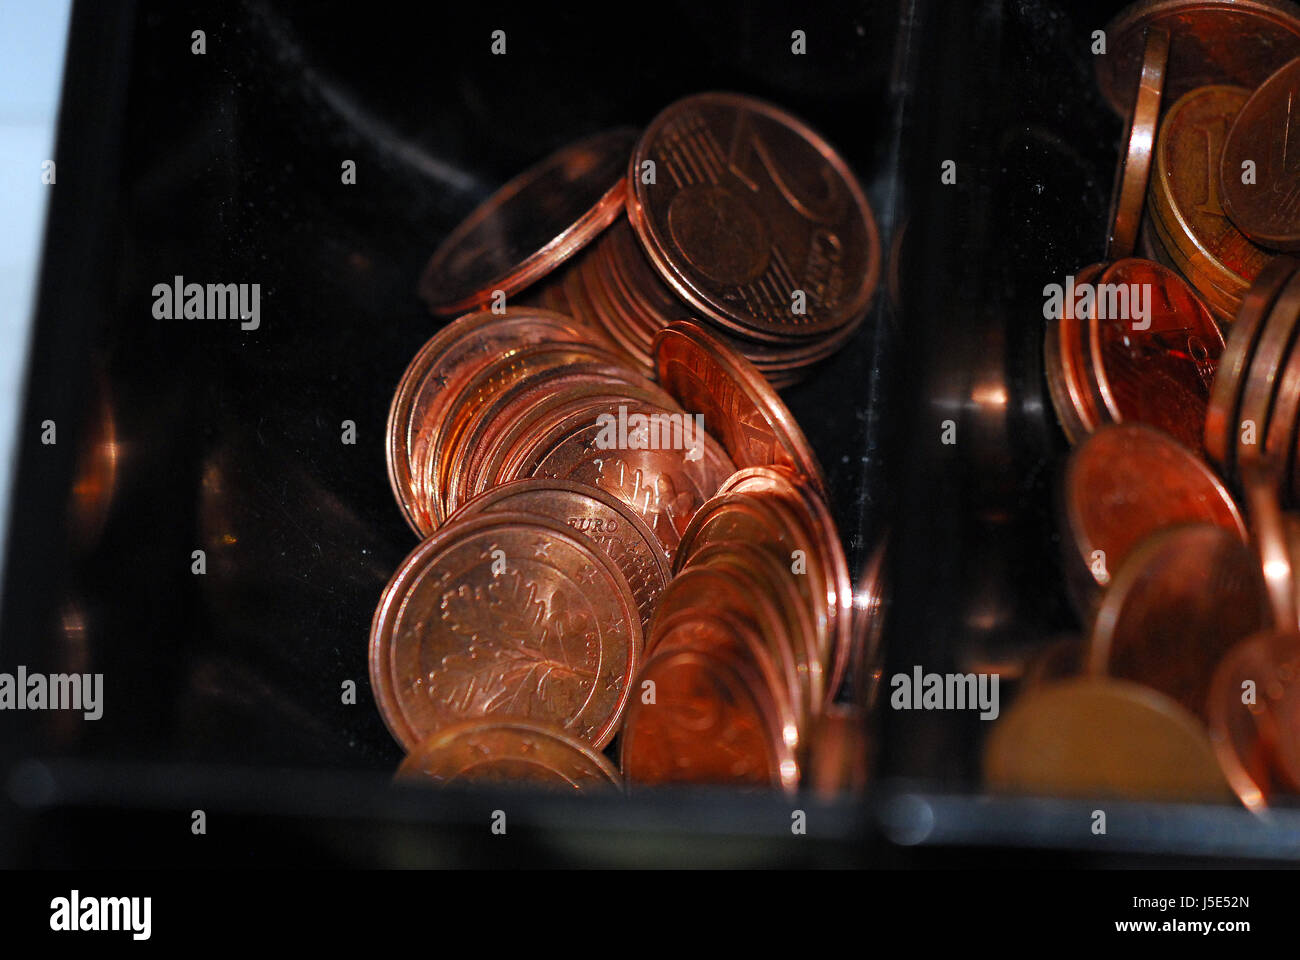 Währung leer europäischen kaukasischen Euro Münzen Bundesbank Austausch-Einführung Stockfoto